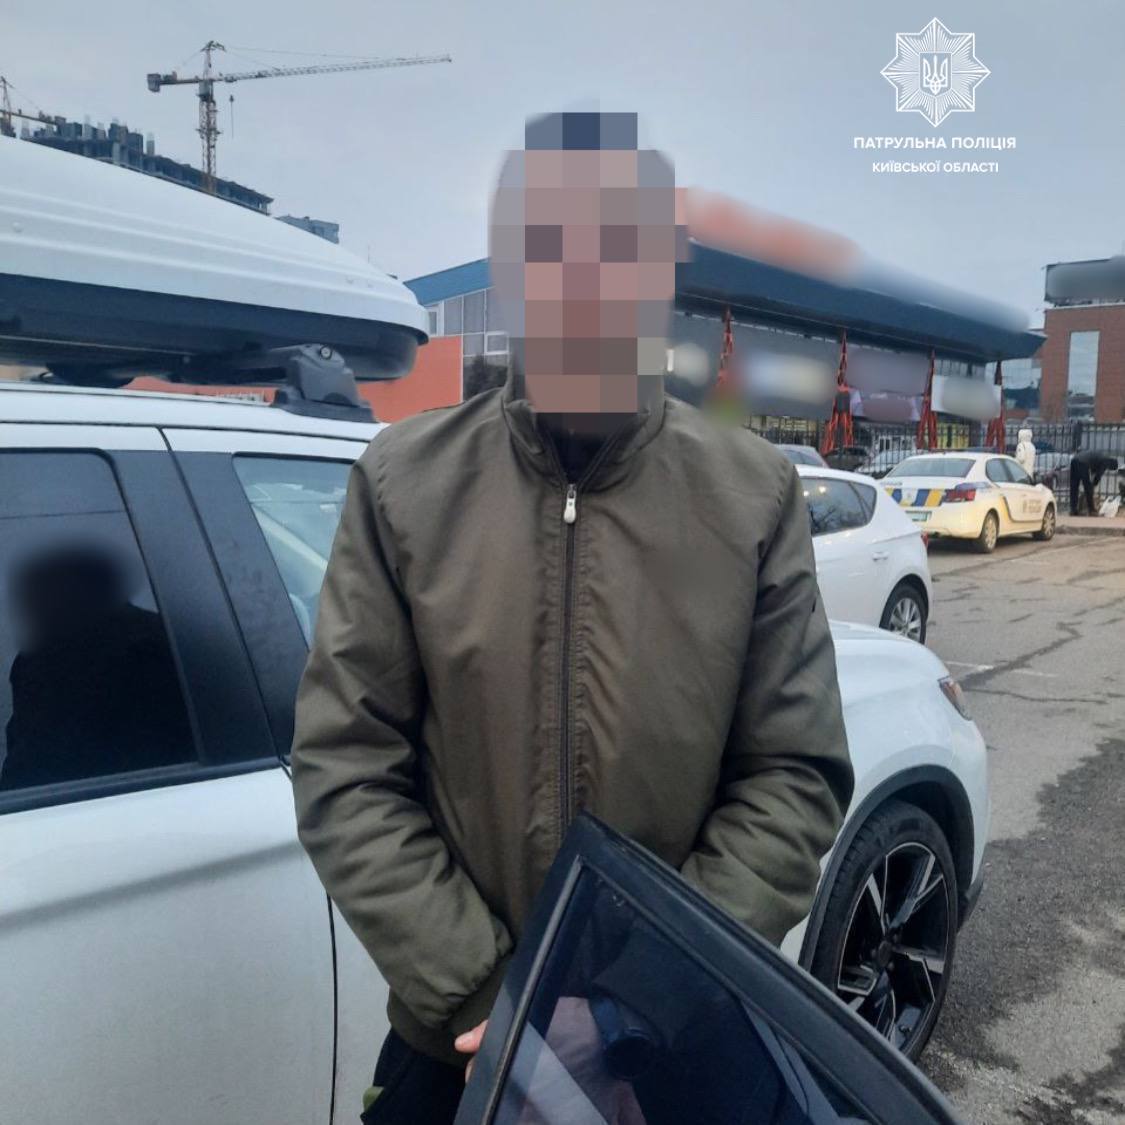 Под Киевом задержан мужчина, которого заподозрили в причастности к российской армии: OBOZREVATEL узнал подробности